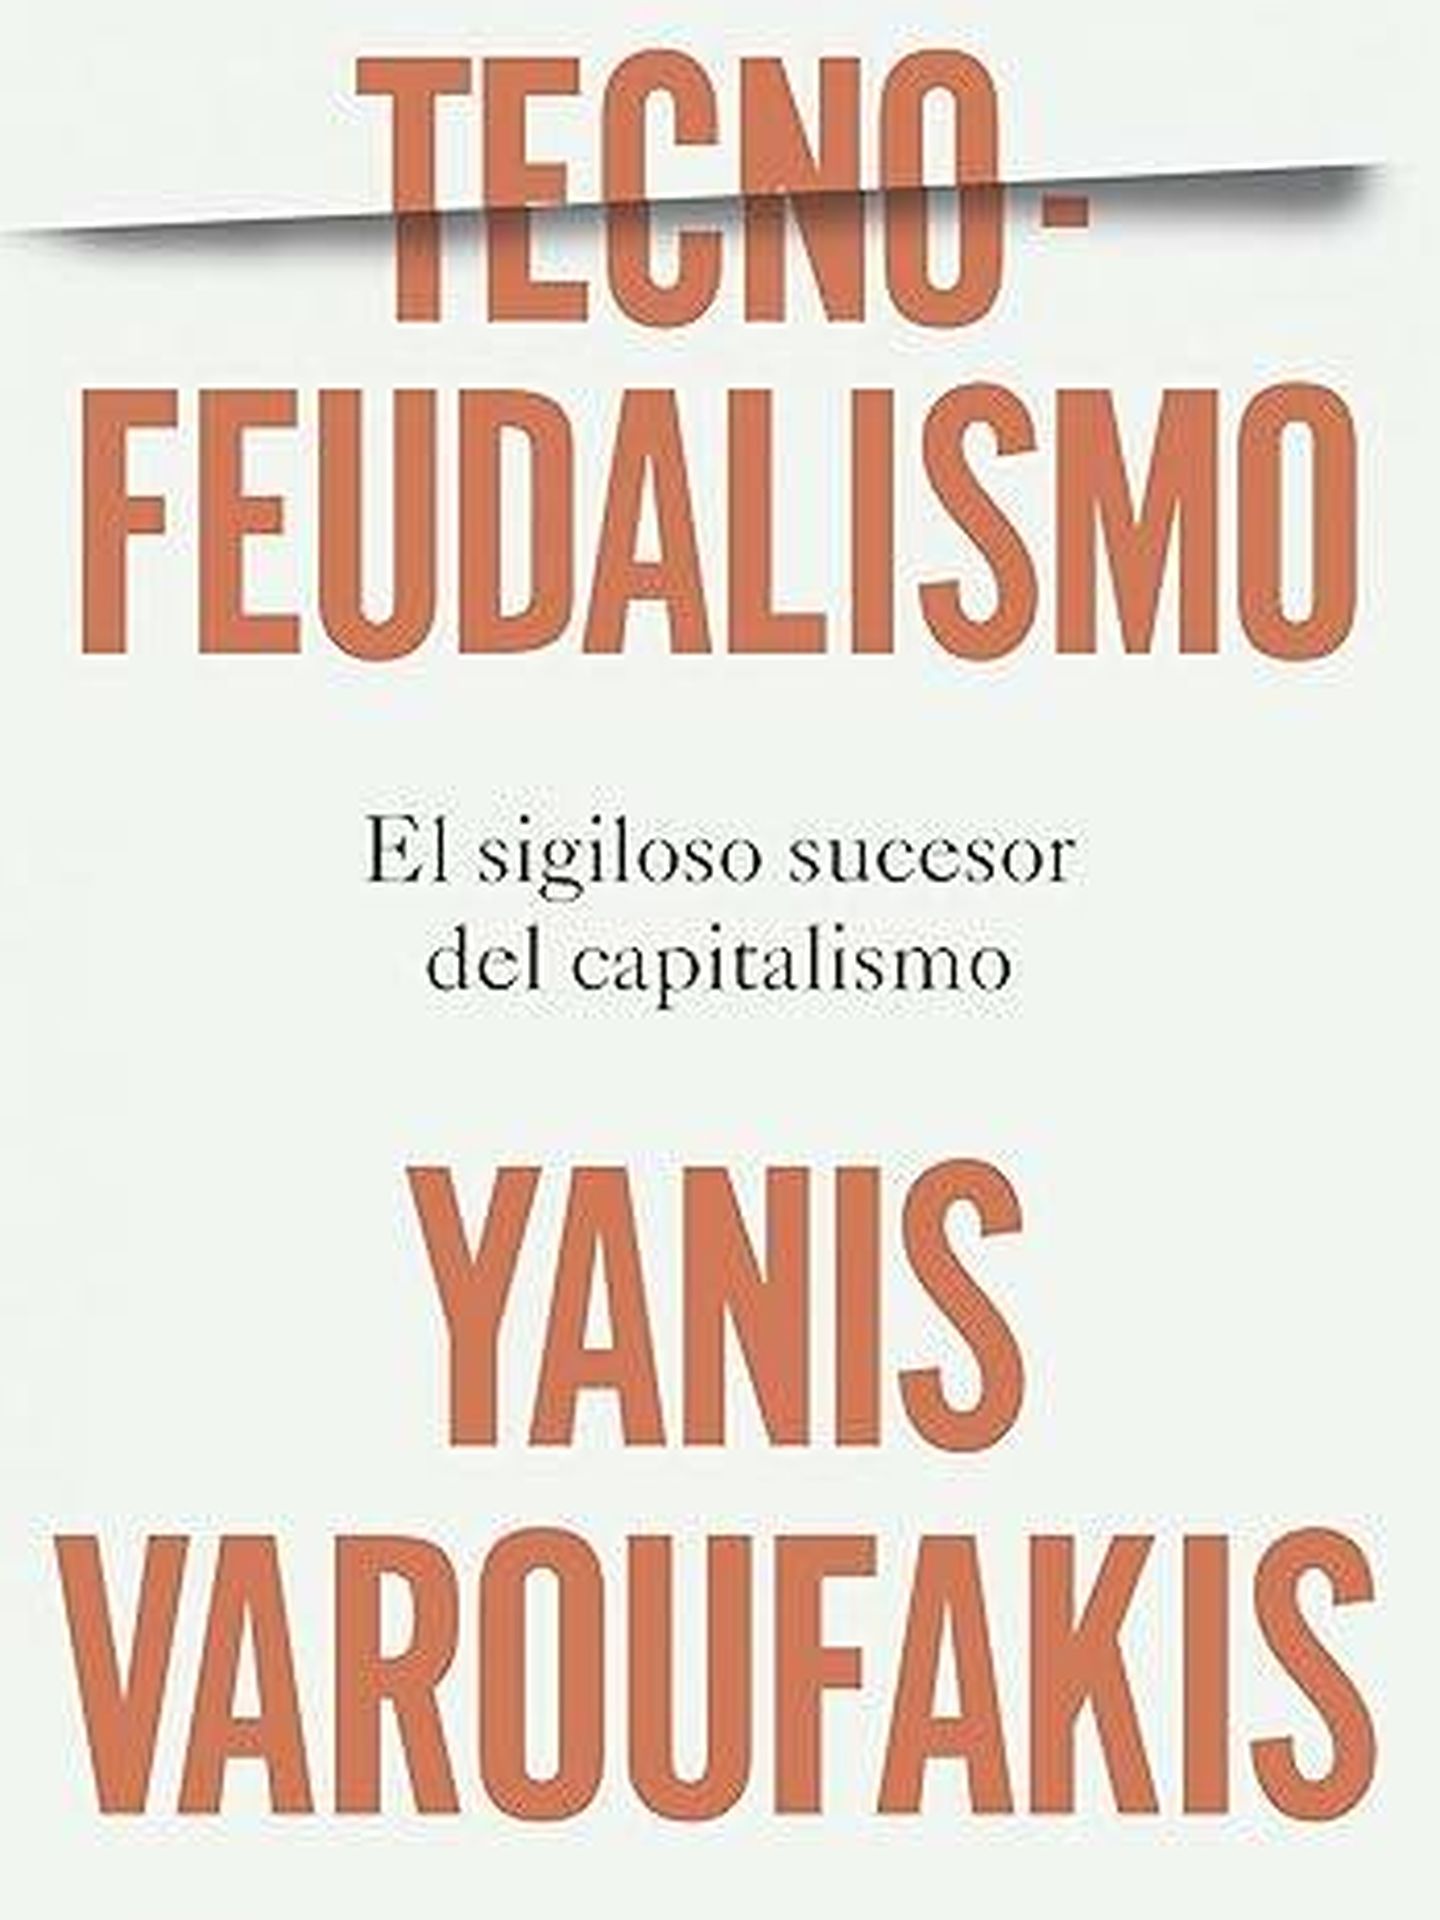 Portada de 'Tecnofeudalismo', el nuevo libro de Yanis Varoufakis. 